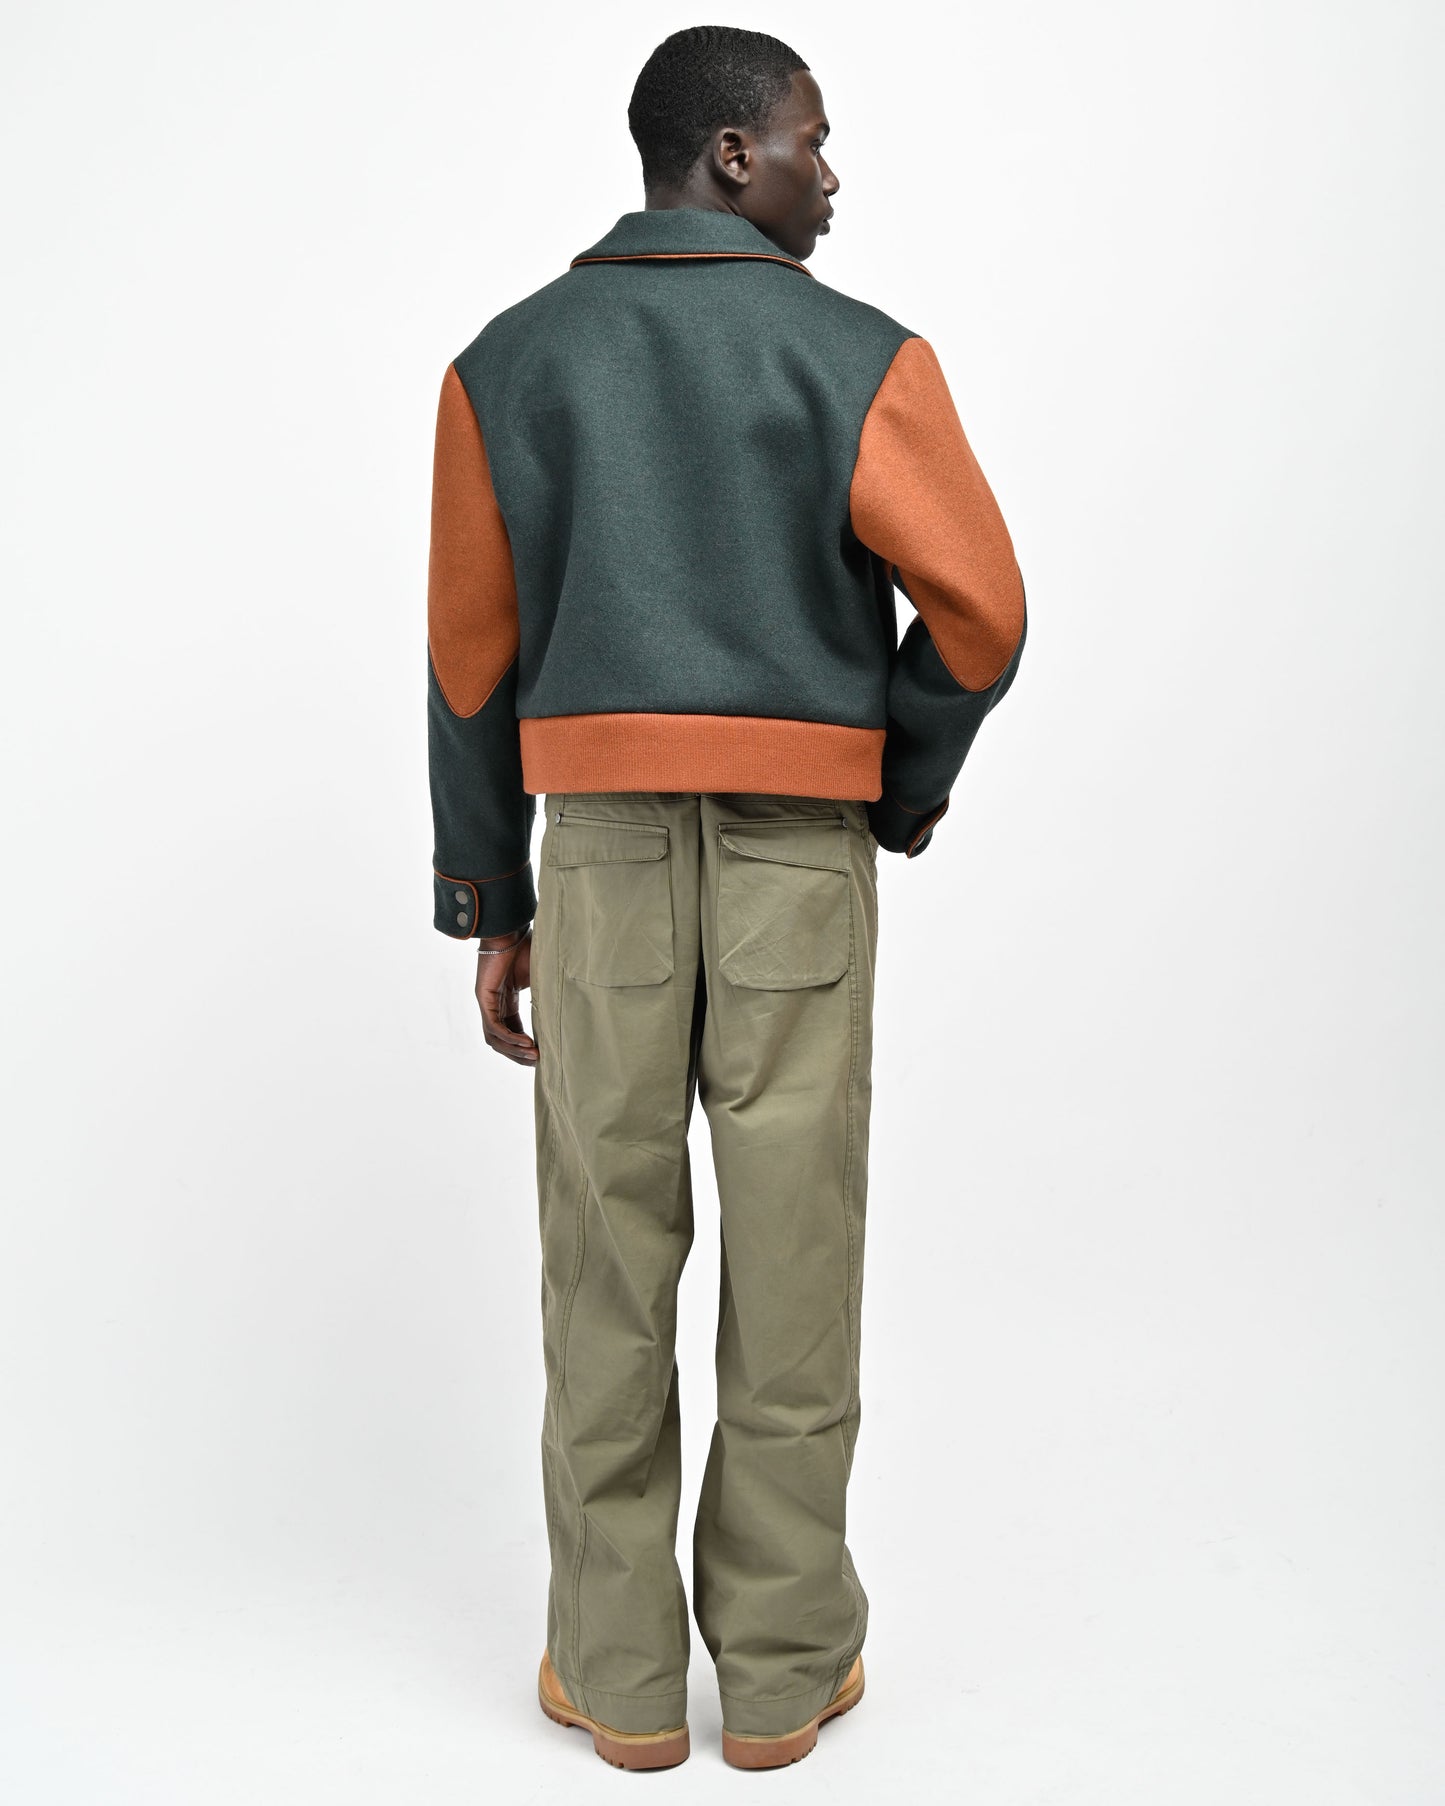 Back View of model wearing Green Rue Varsity Jacket by Aseye Studio